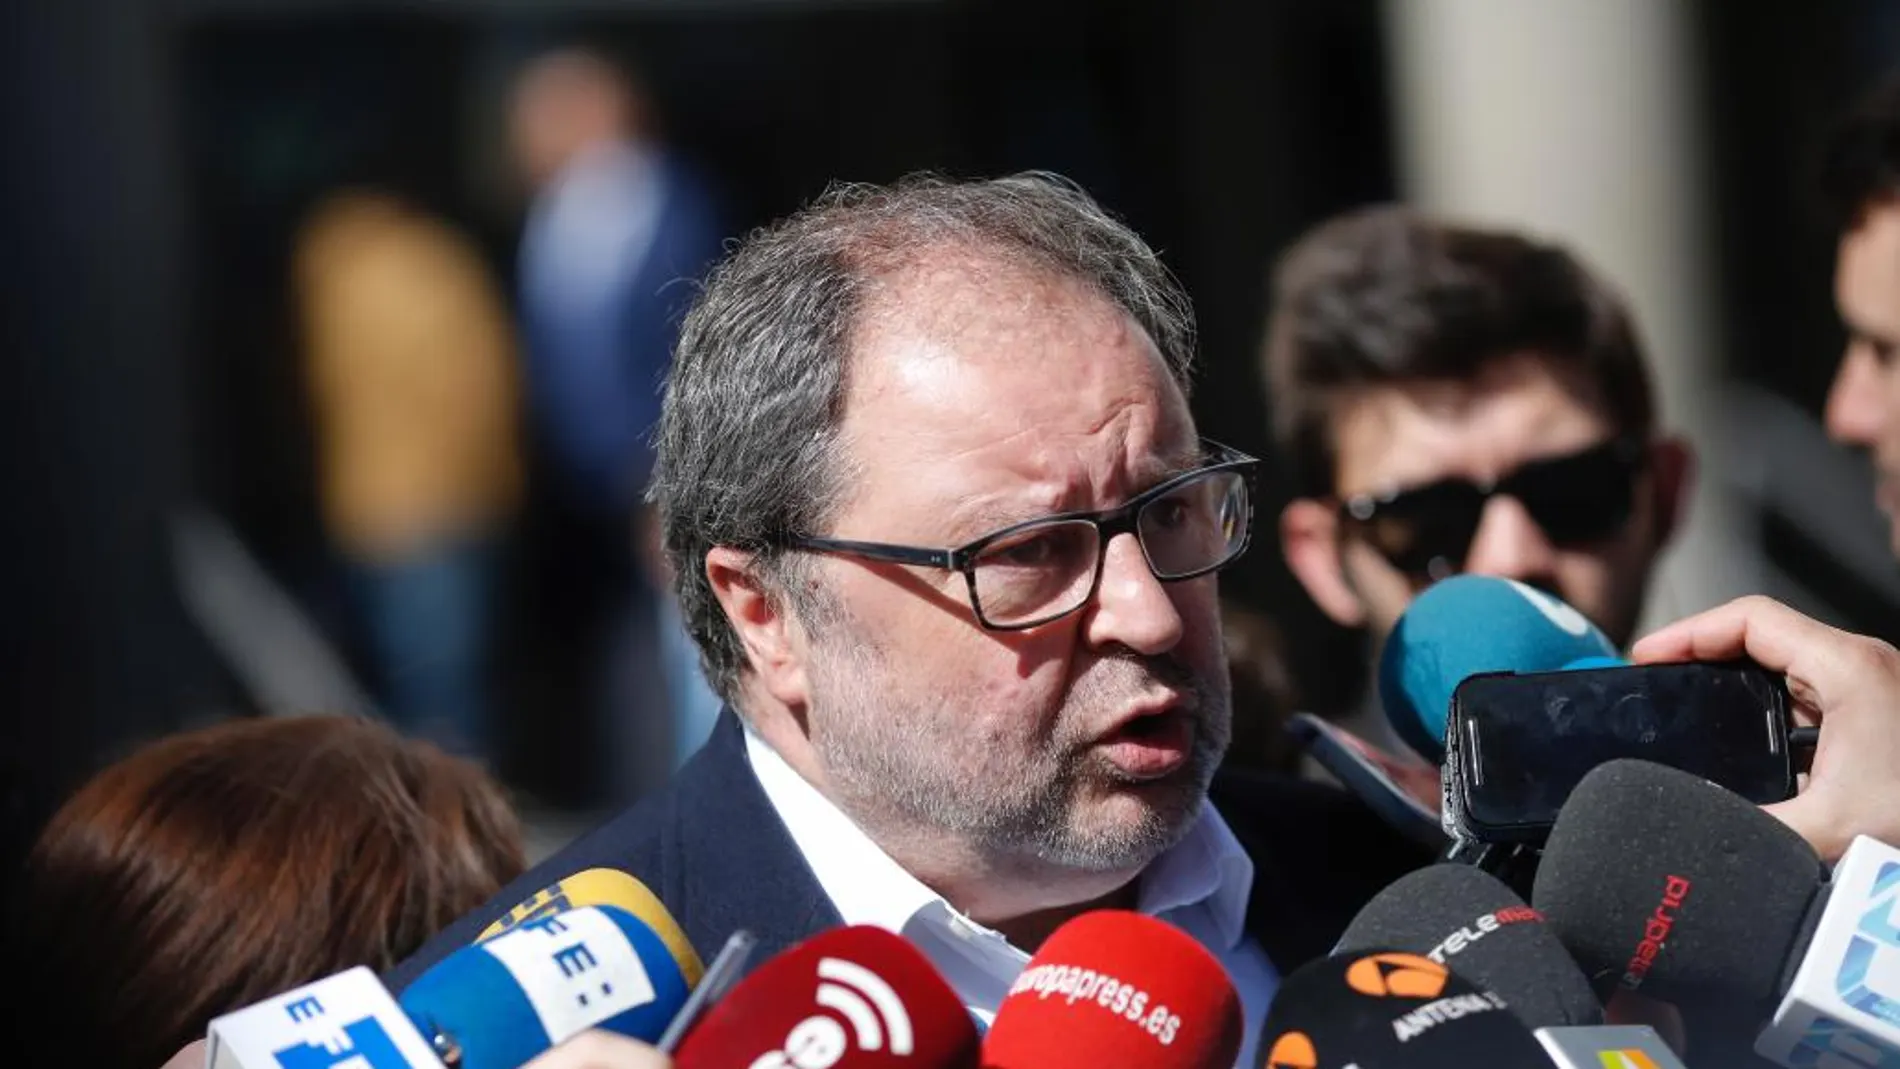 El delegado de Seguridad del Ayuntamiento de Madrid, Javier Barbero, tras prestar declaración en los juzgados de Plaza de Castilla